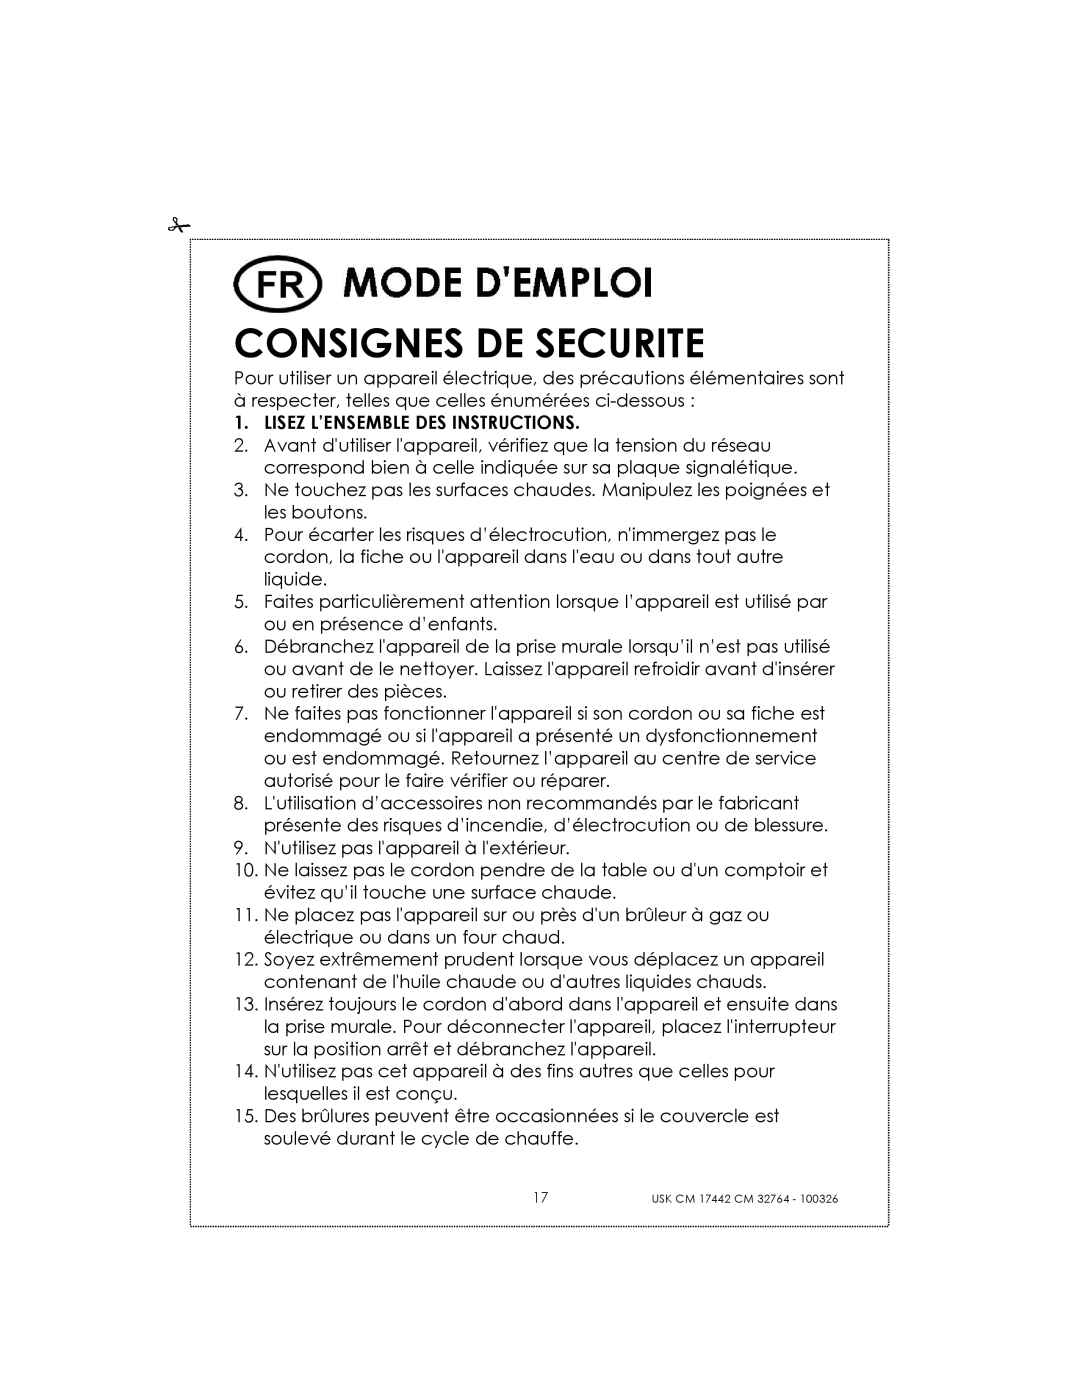 Kalorik USK CM 32764, USK CM 17442 manual Consignes De Securite 